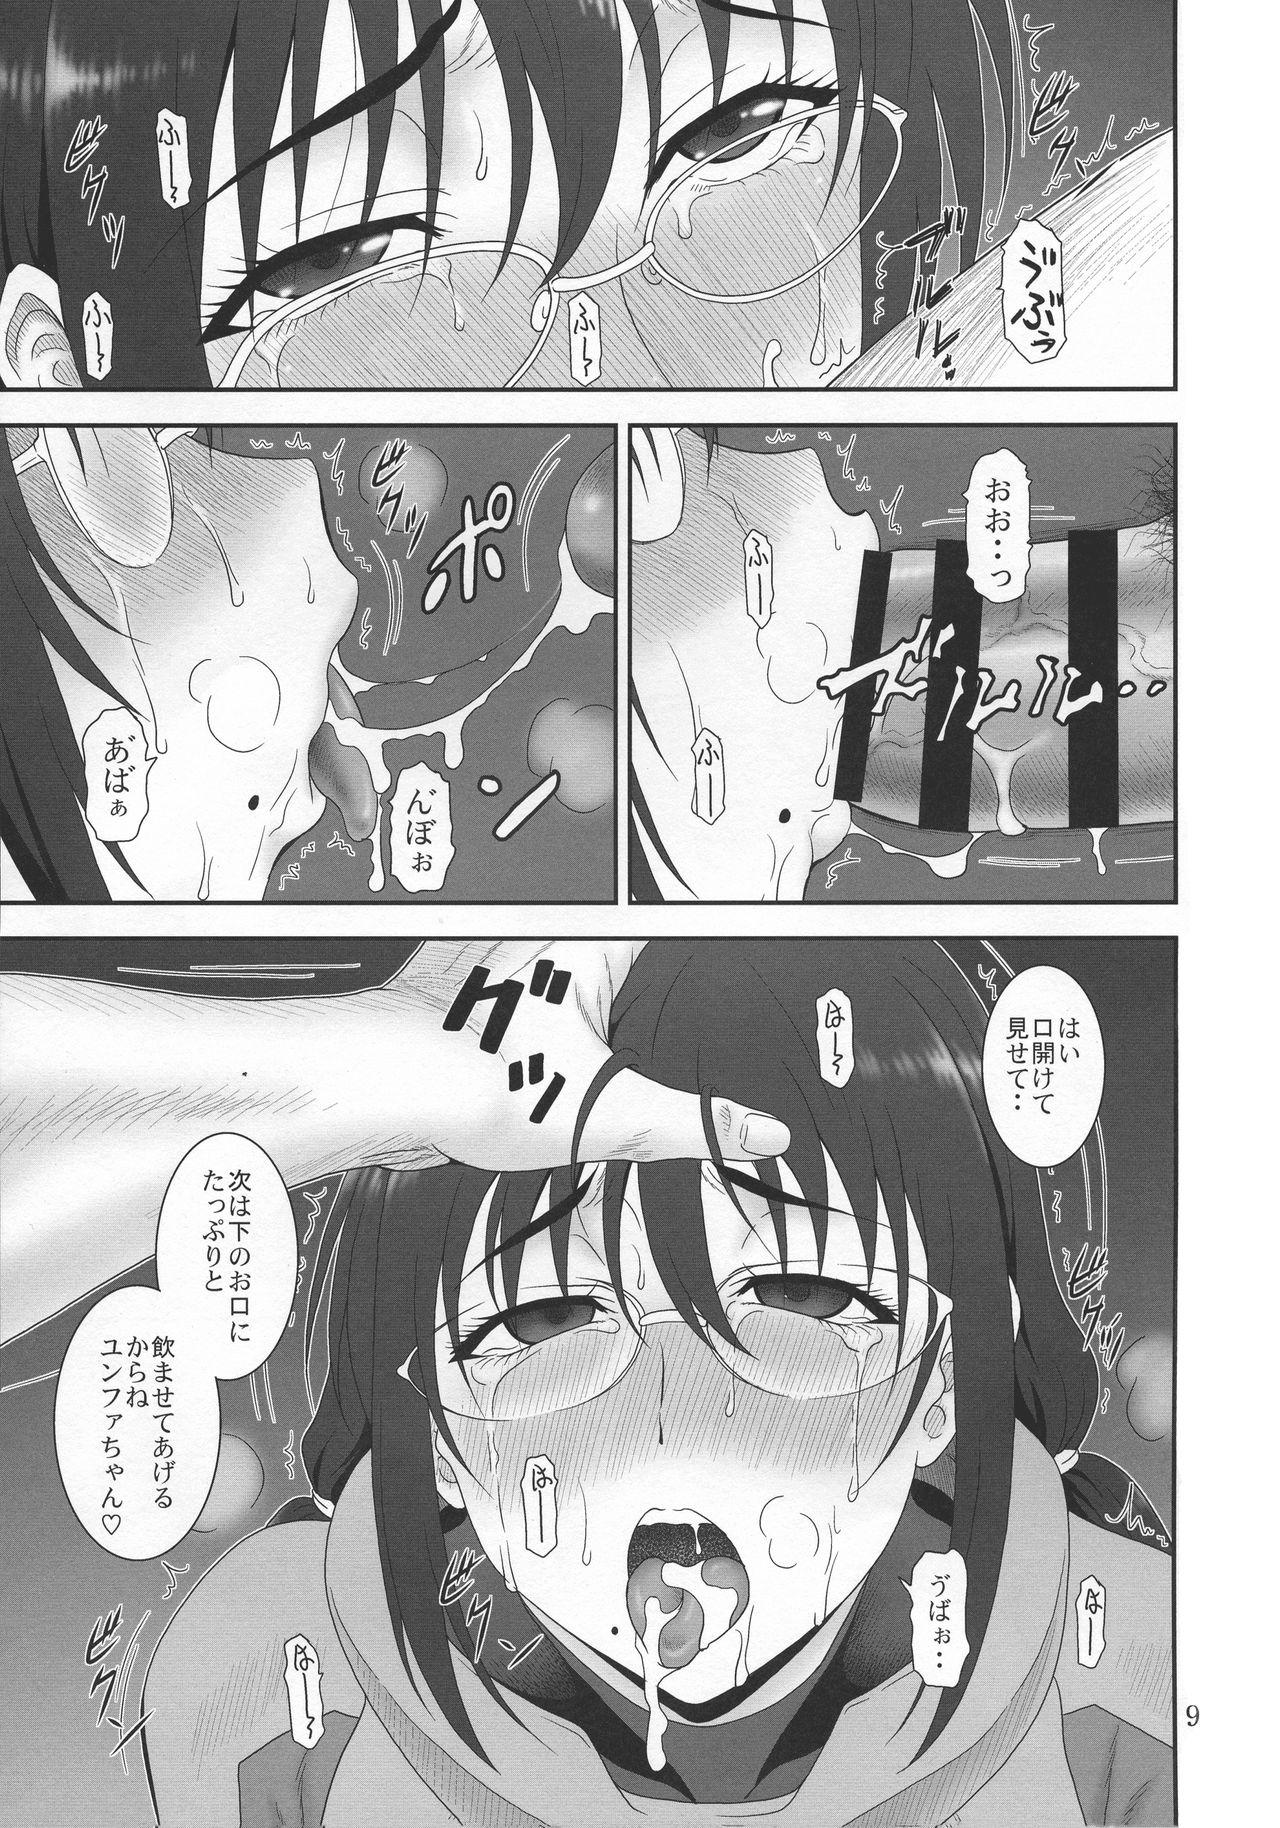 Sloppy Blow Job Kyuukyou no Wakusei - Planet of plight - Kanata no astra Stripping - Page 8